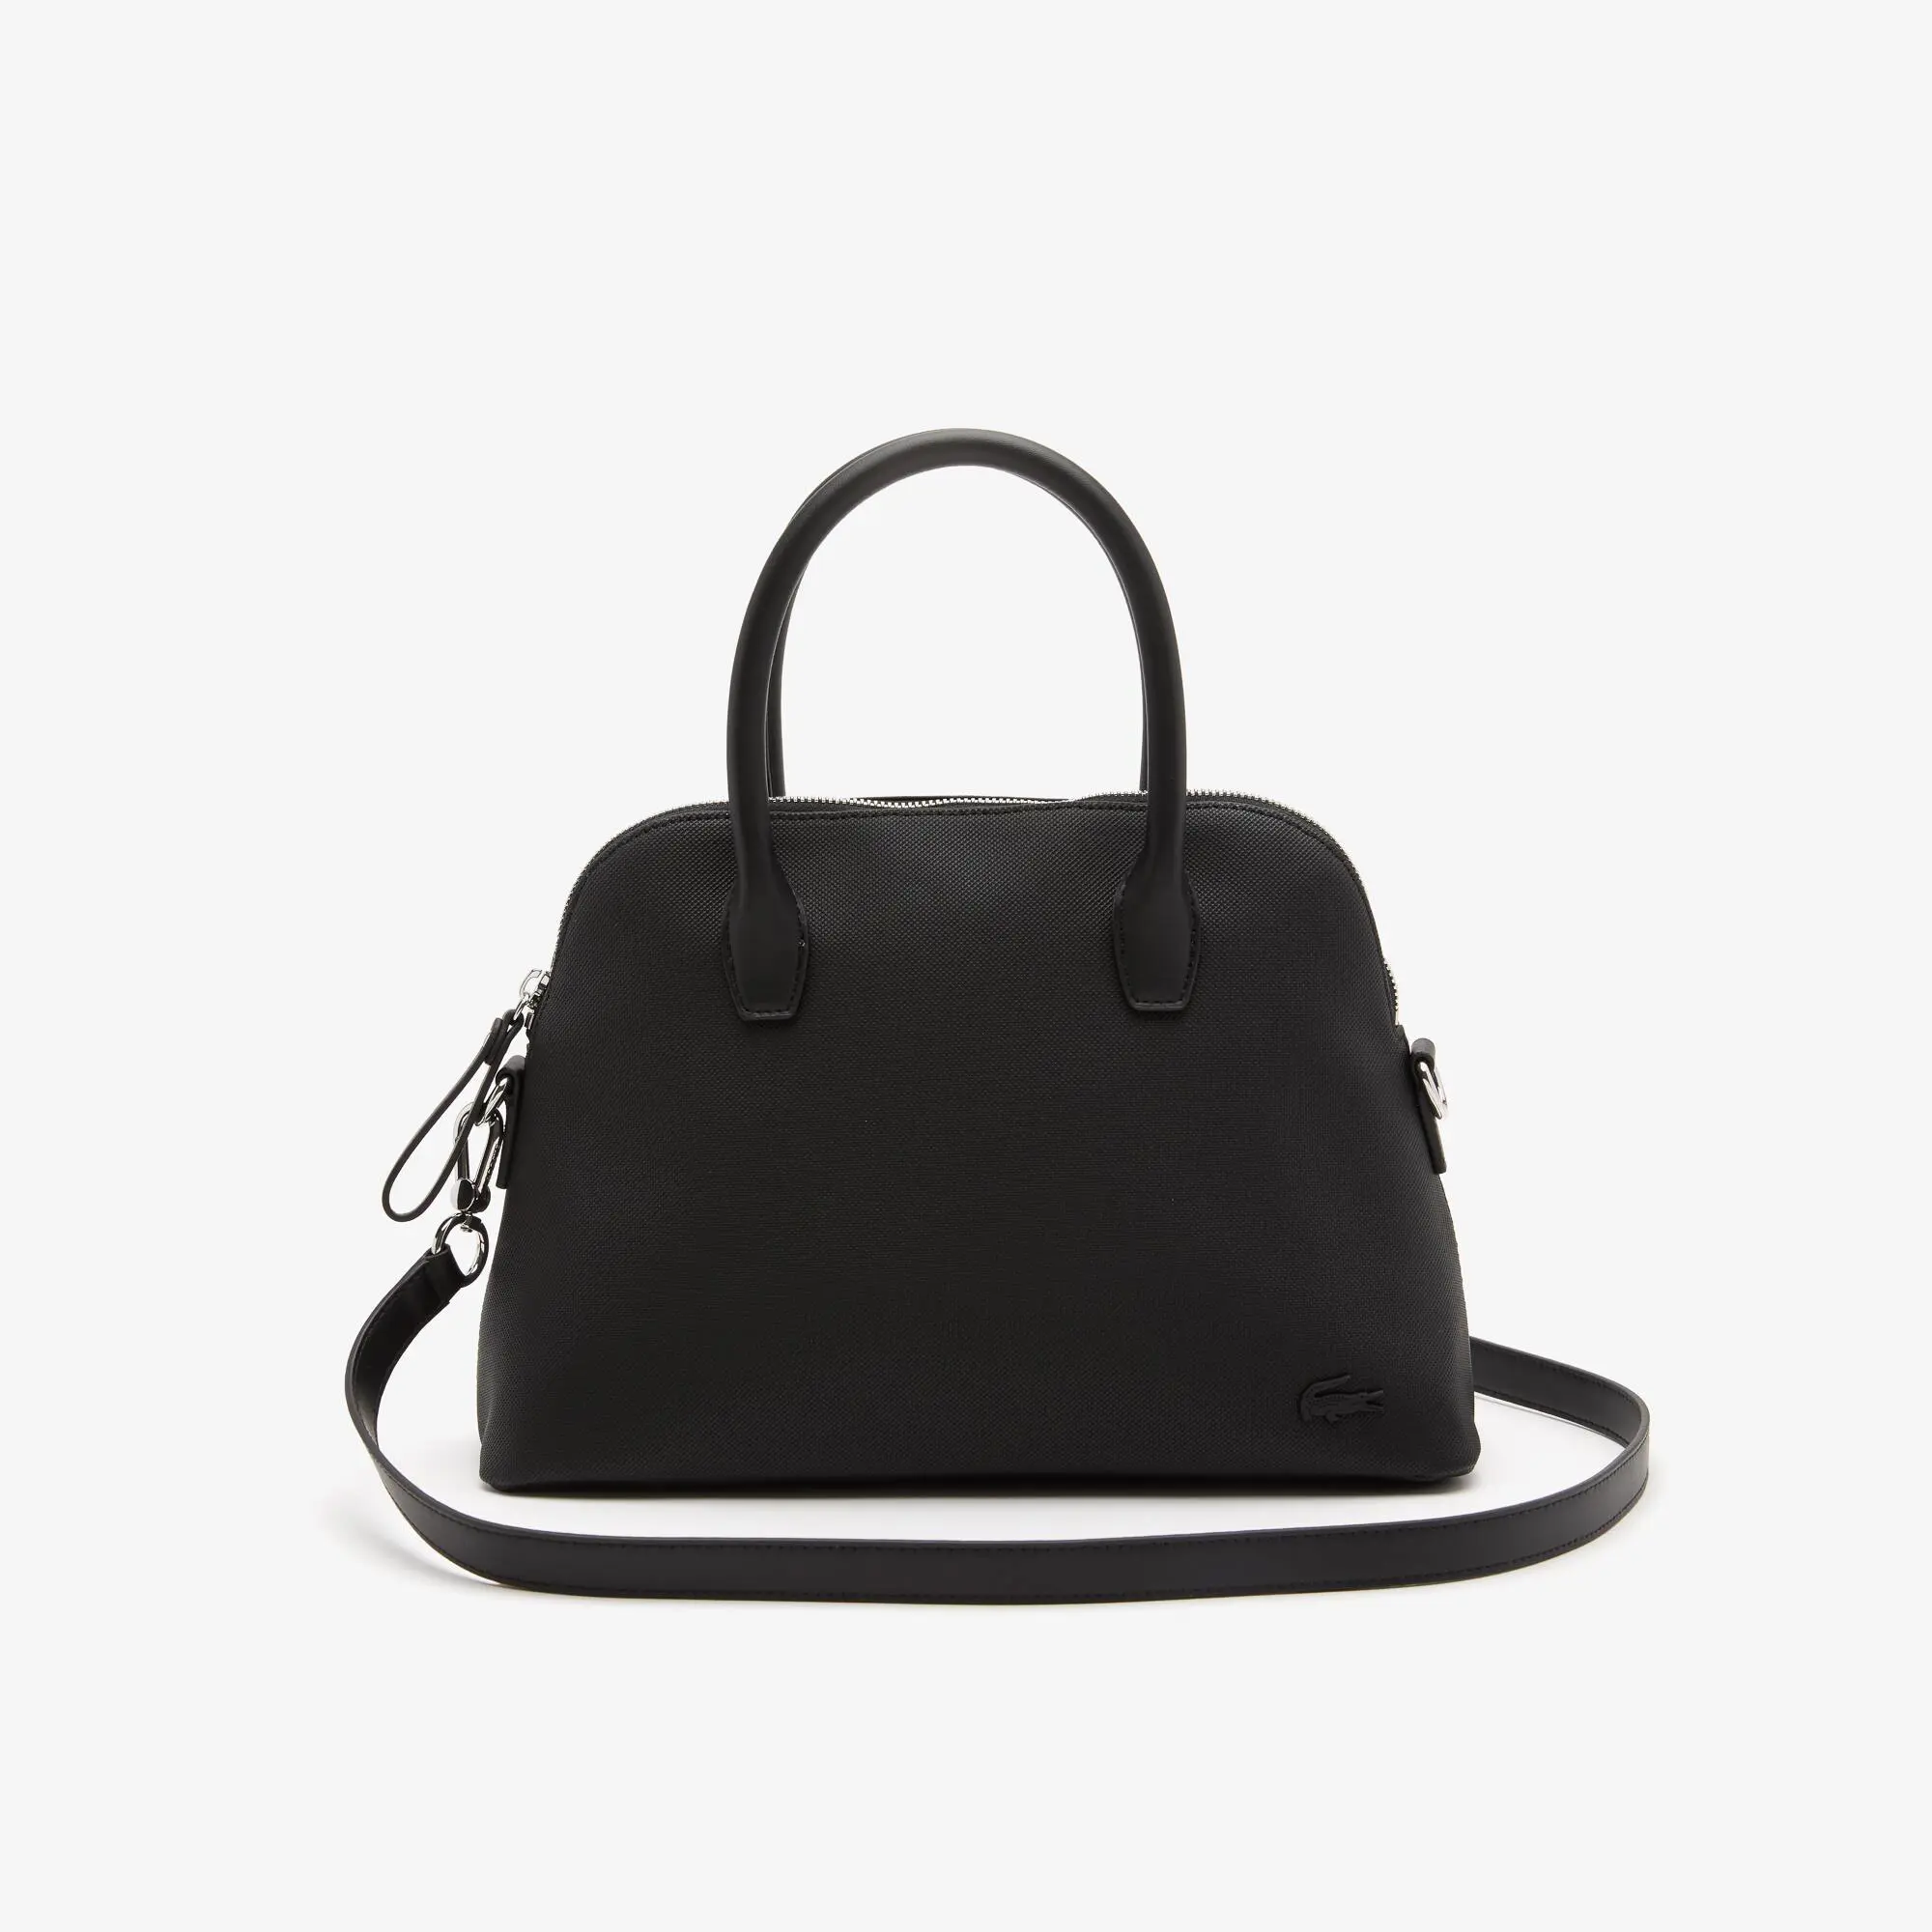 Lacoste Women's Detachable Strap Bag. 1